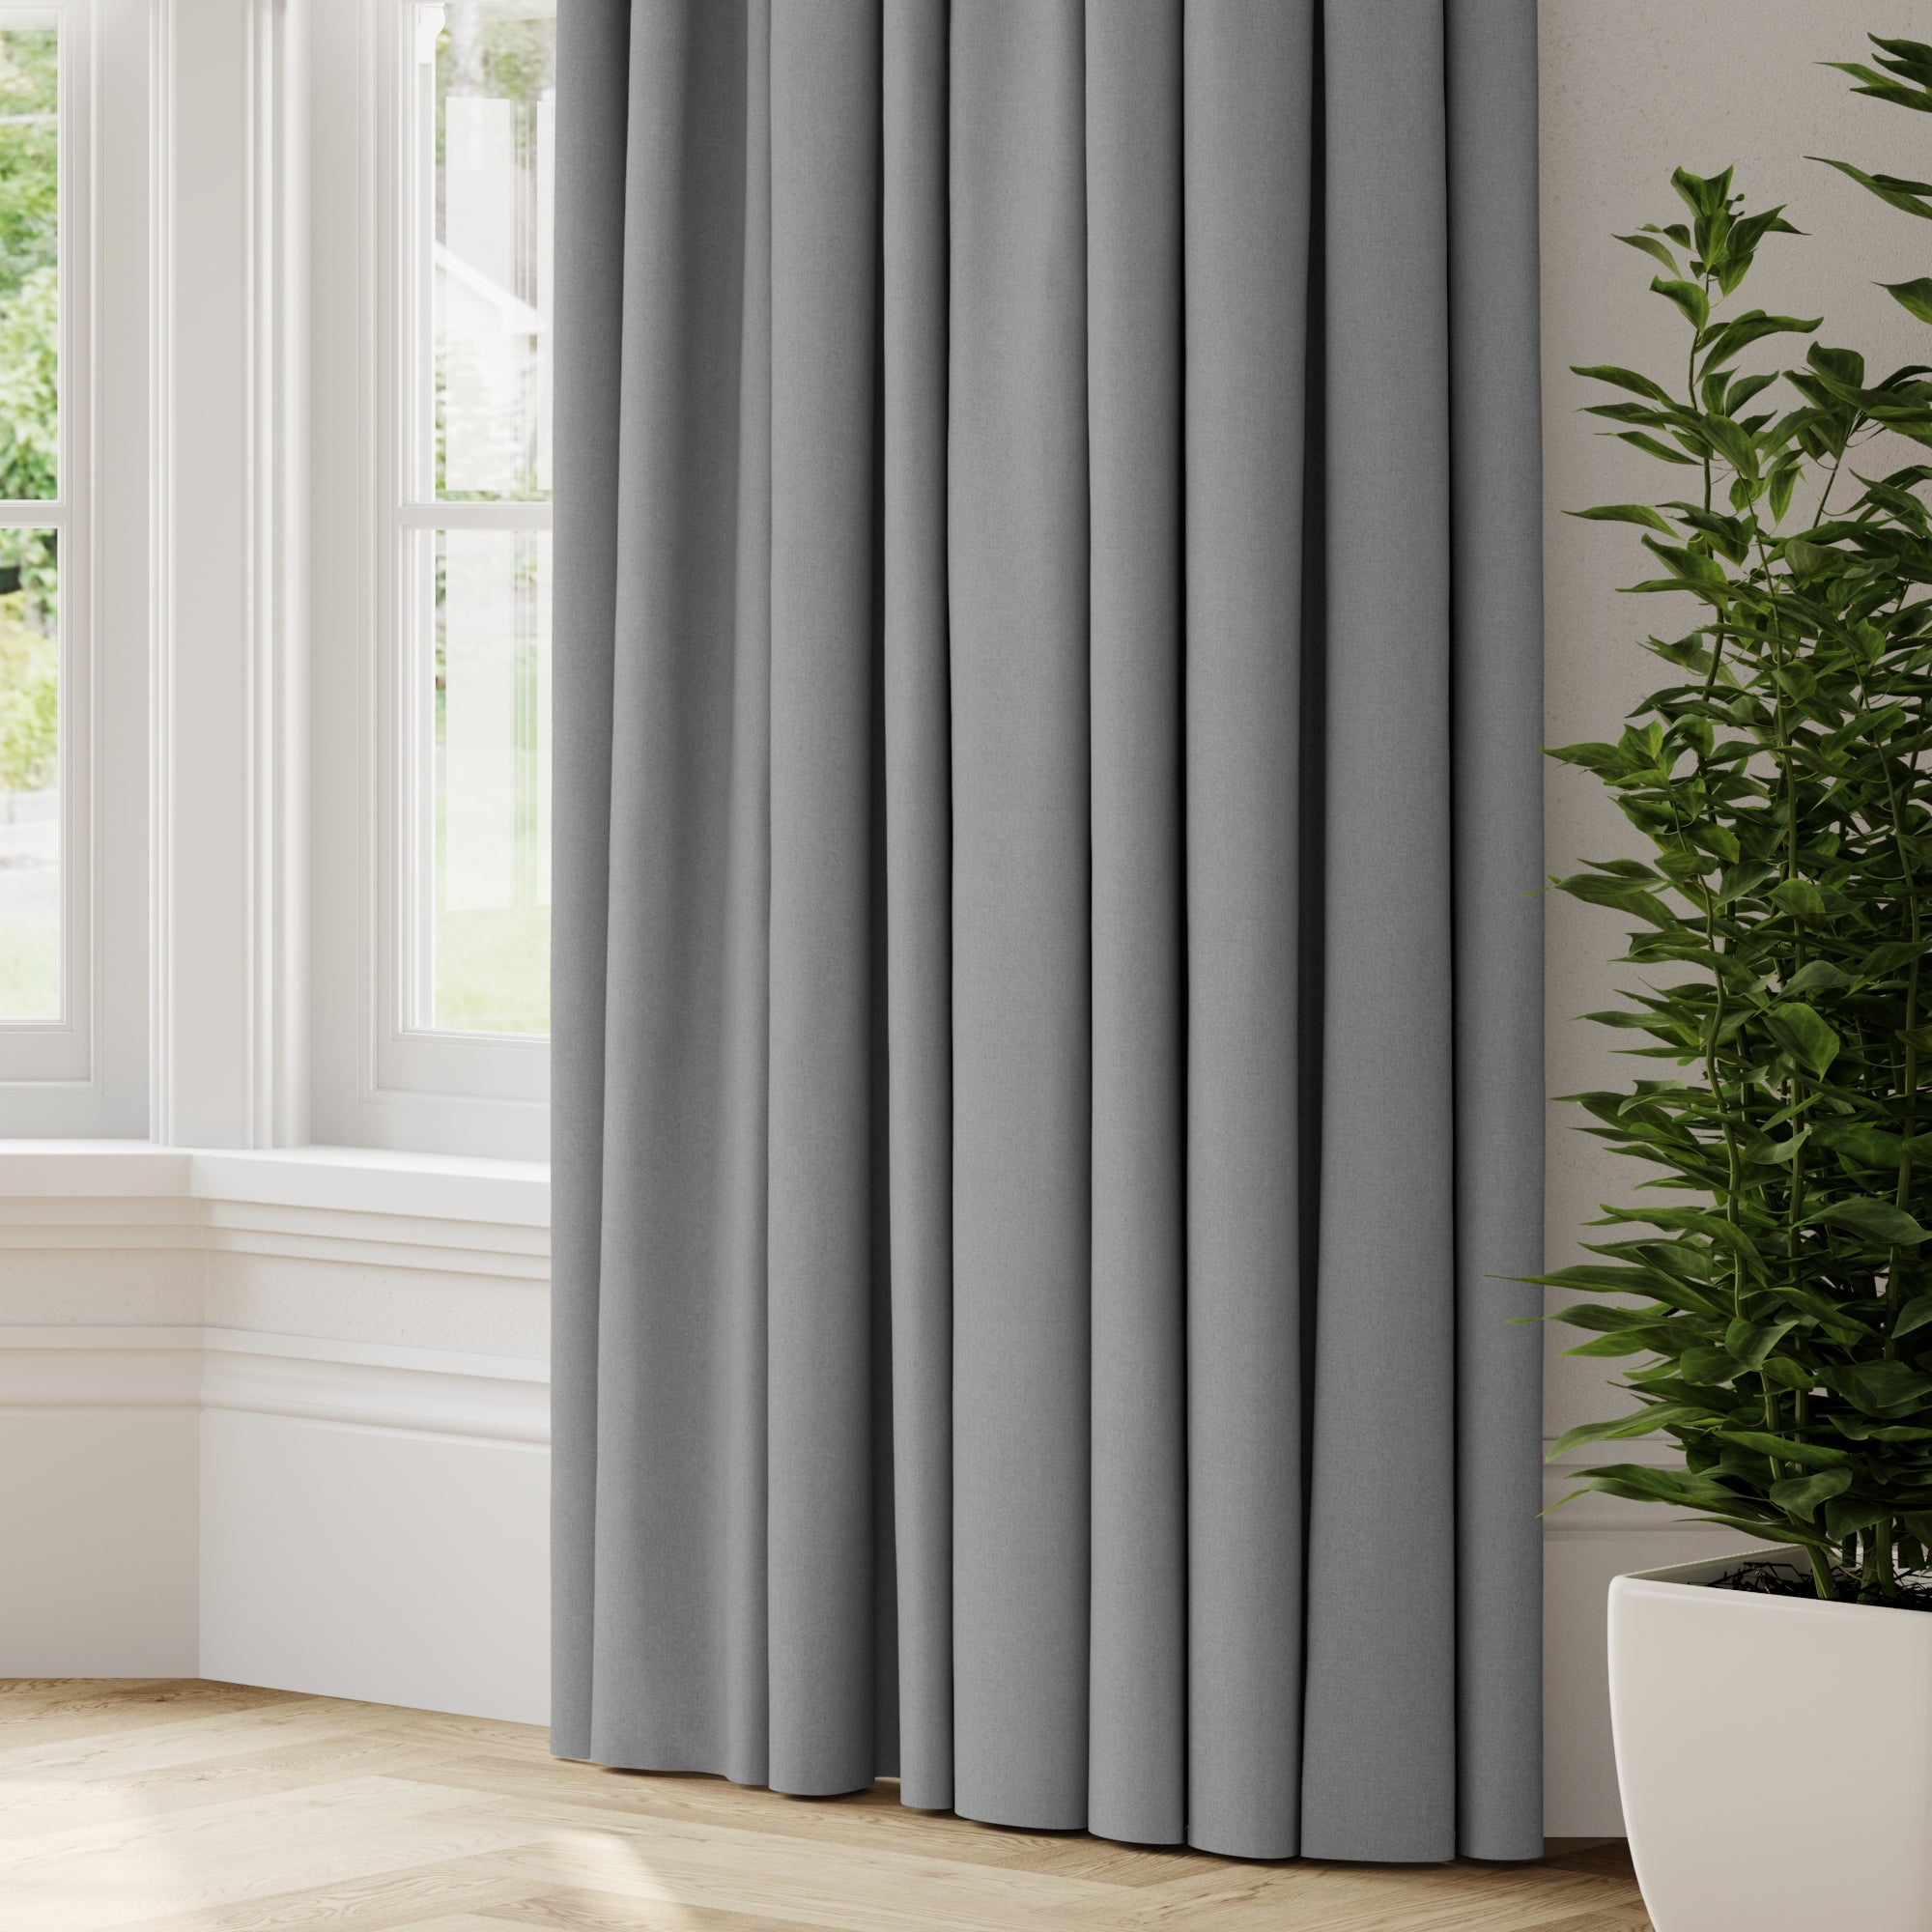 Savanna Made to Measure Fire Retardant Curtains Grey